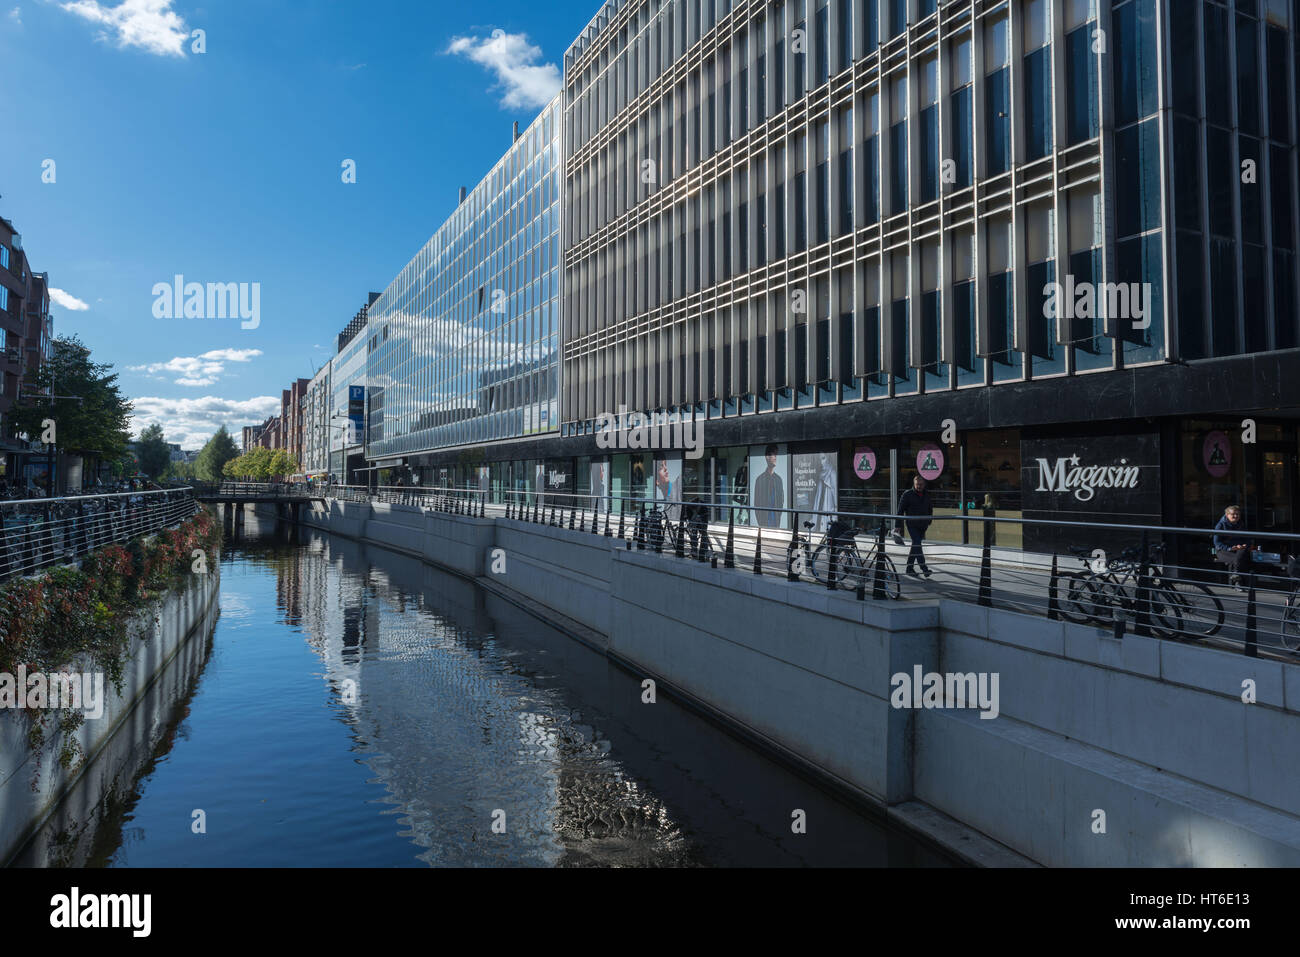 Magasin shopping venter, Aarhus, Europea città culturale nel 2017, Nord dello Jutland, Danimarca Foto Stock